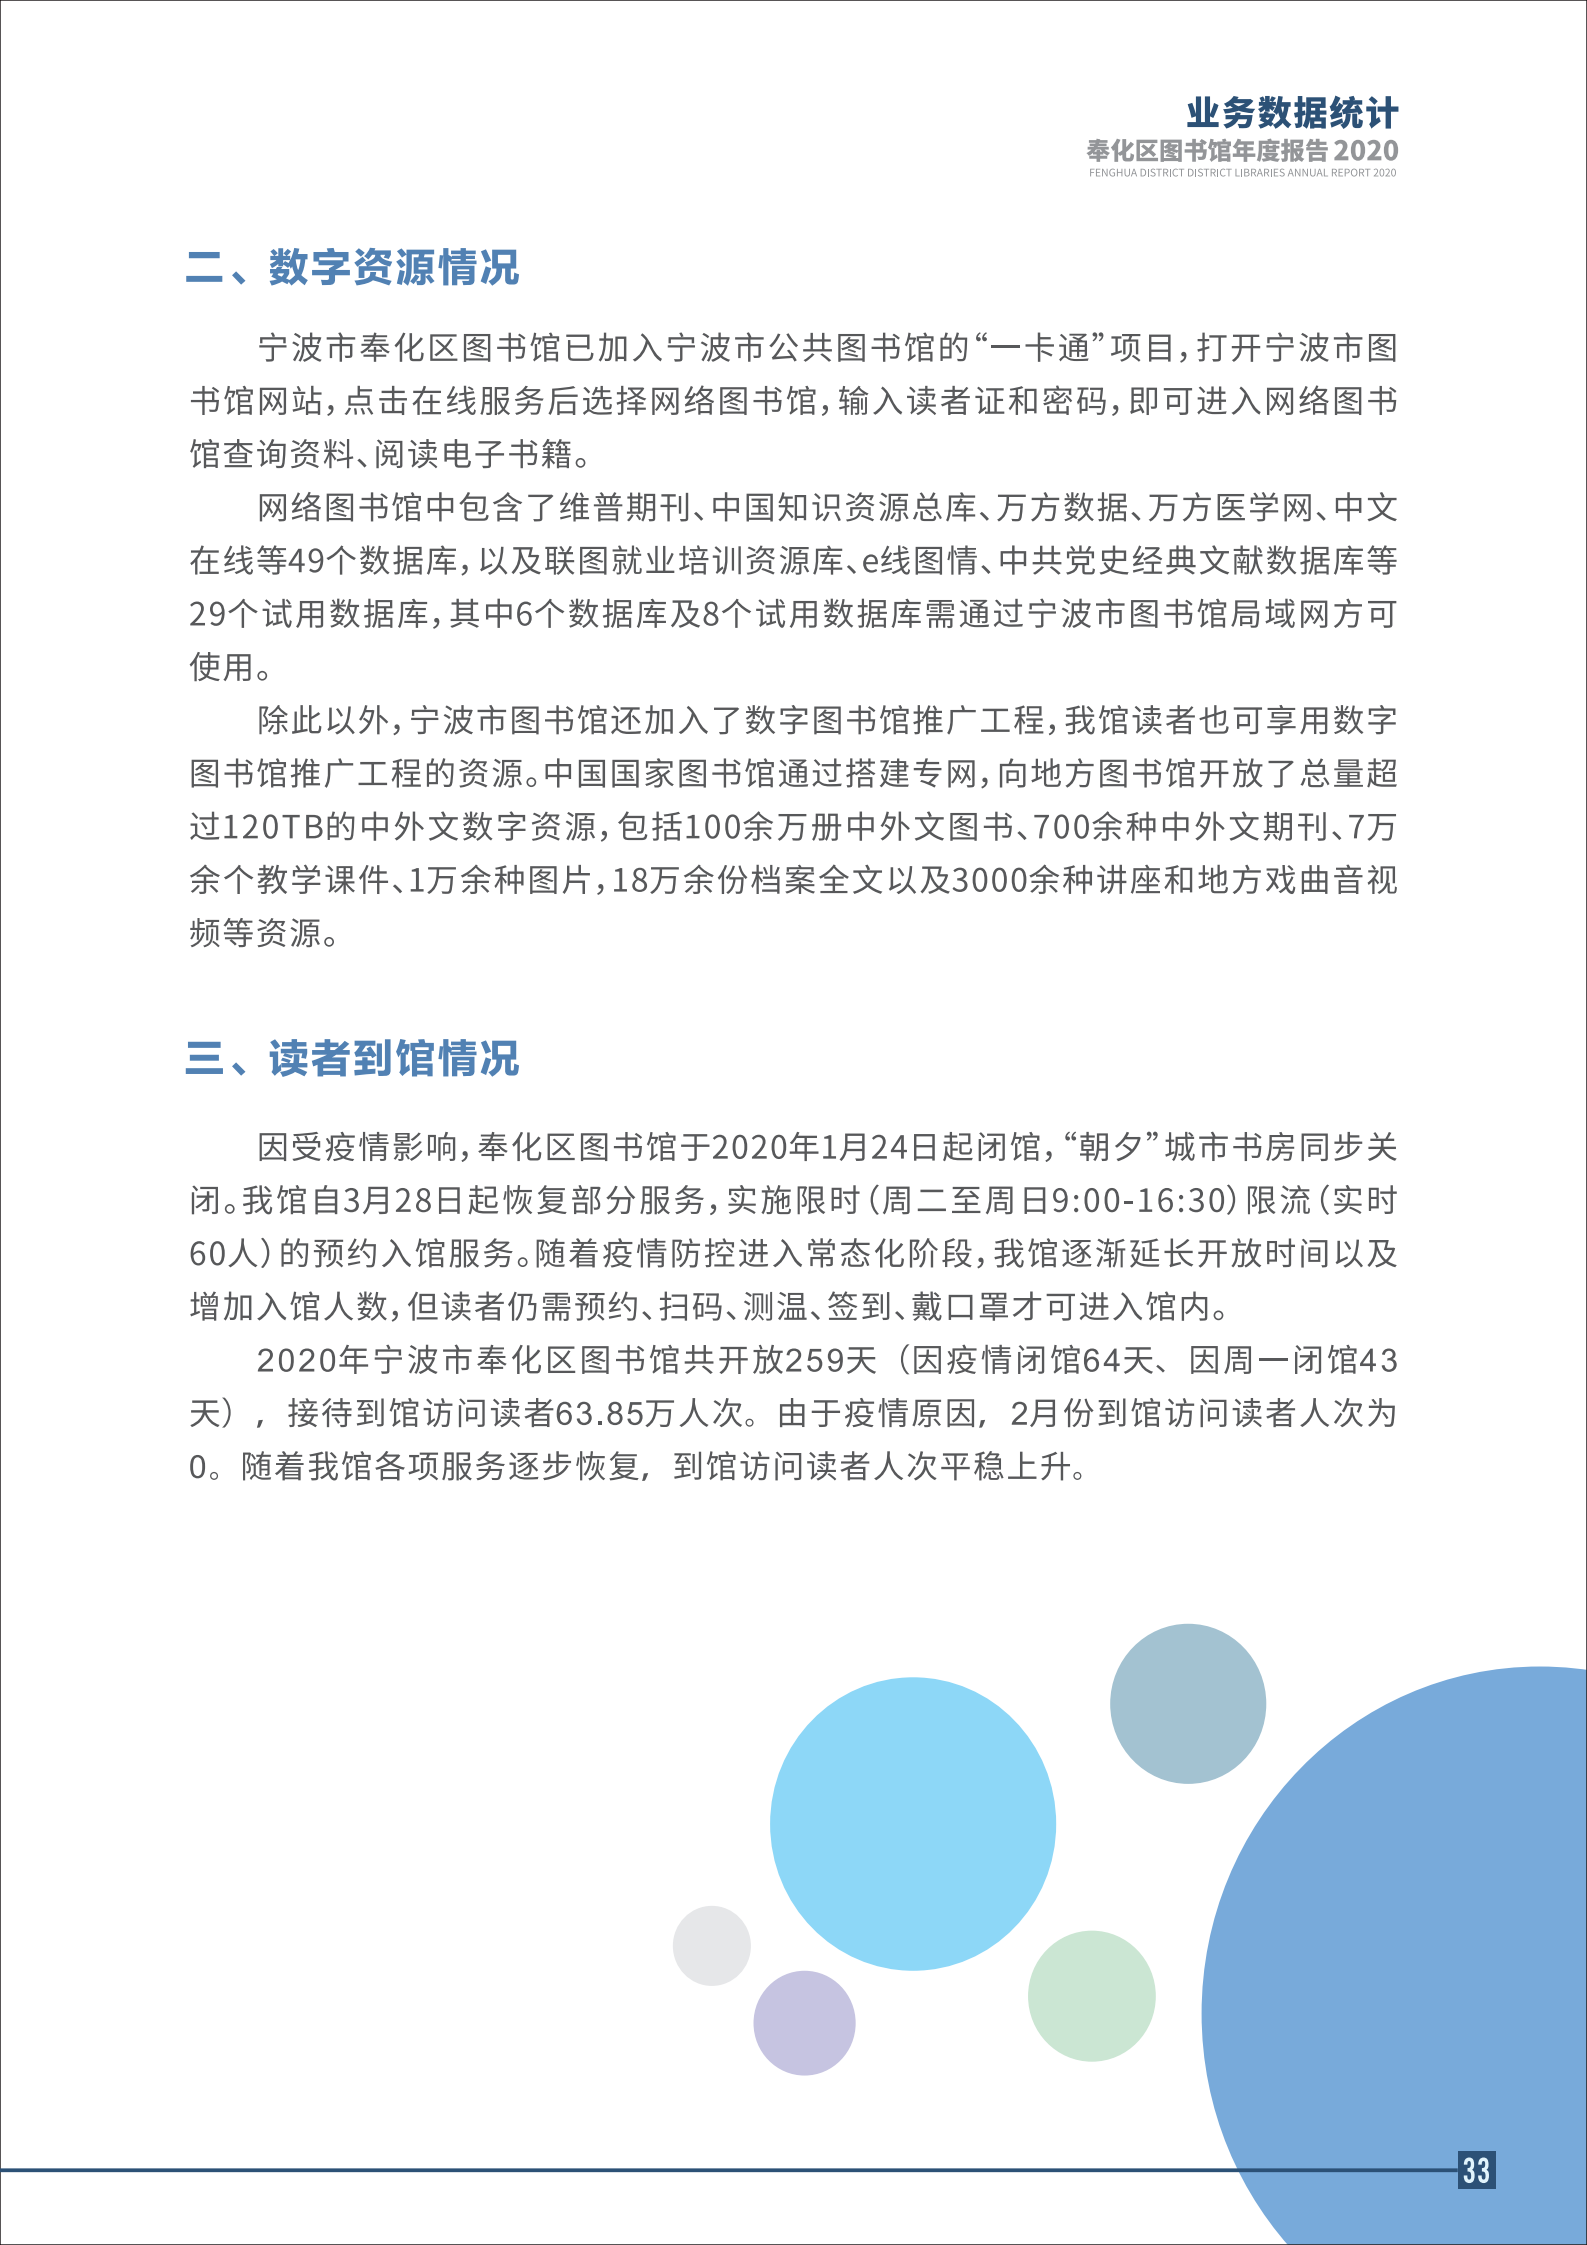 宁波市奉化区图书馆2020年年度报告 终稿_33.png